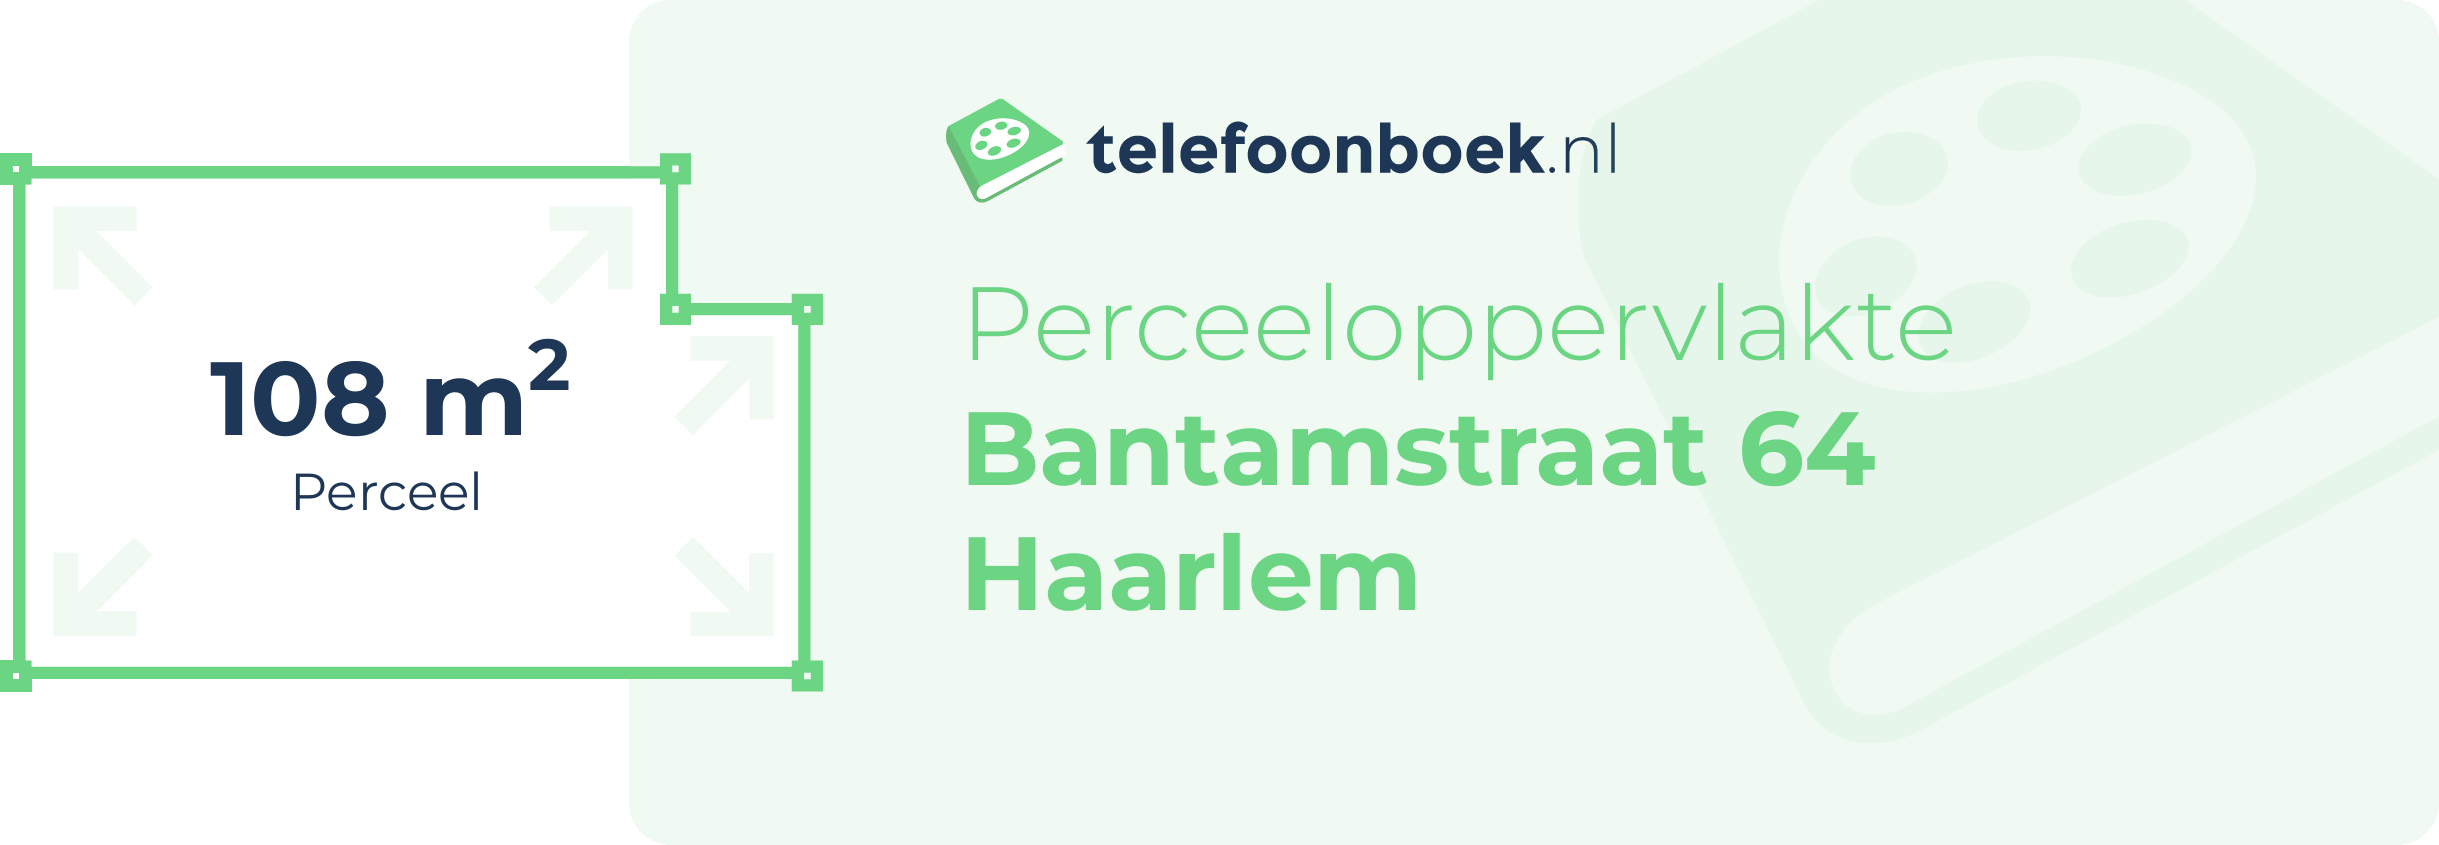 Perceeloppervlakte Bantamstraat 64 Haarlem